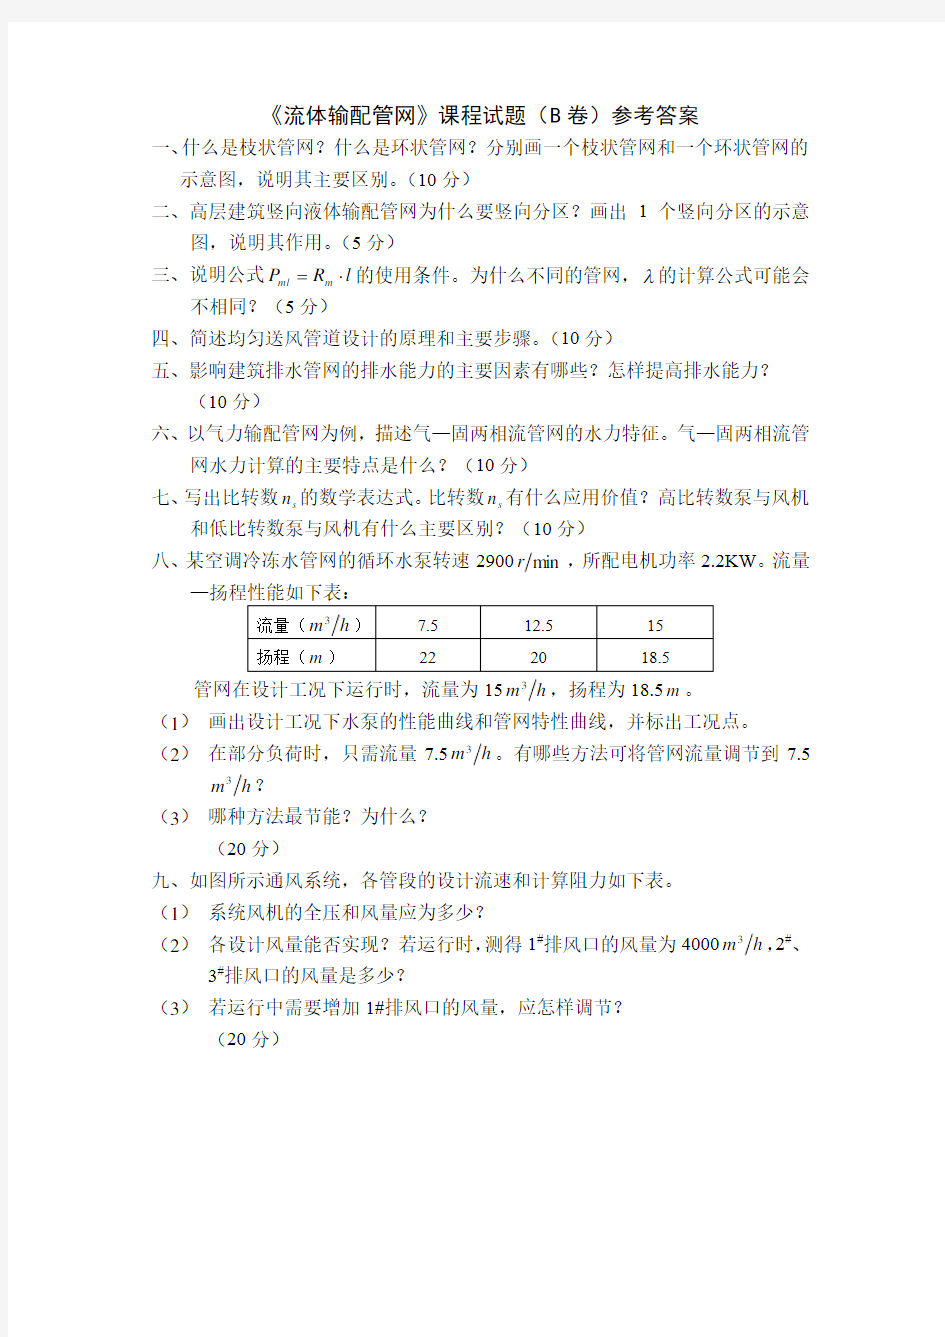 (完整版)重庆大学流体输配管网试卷